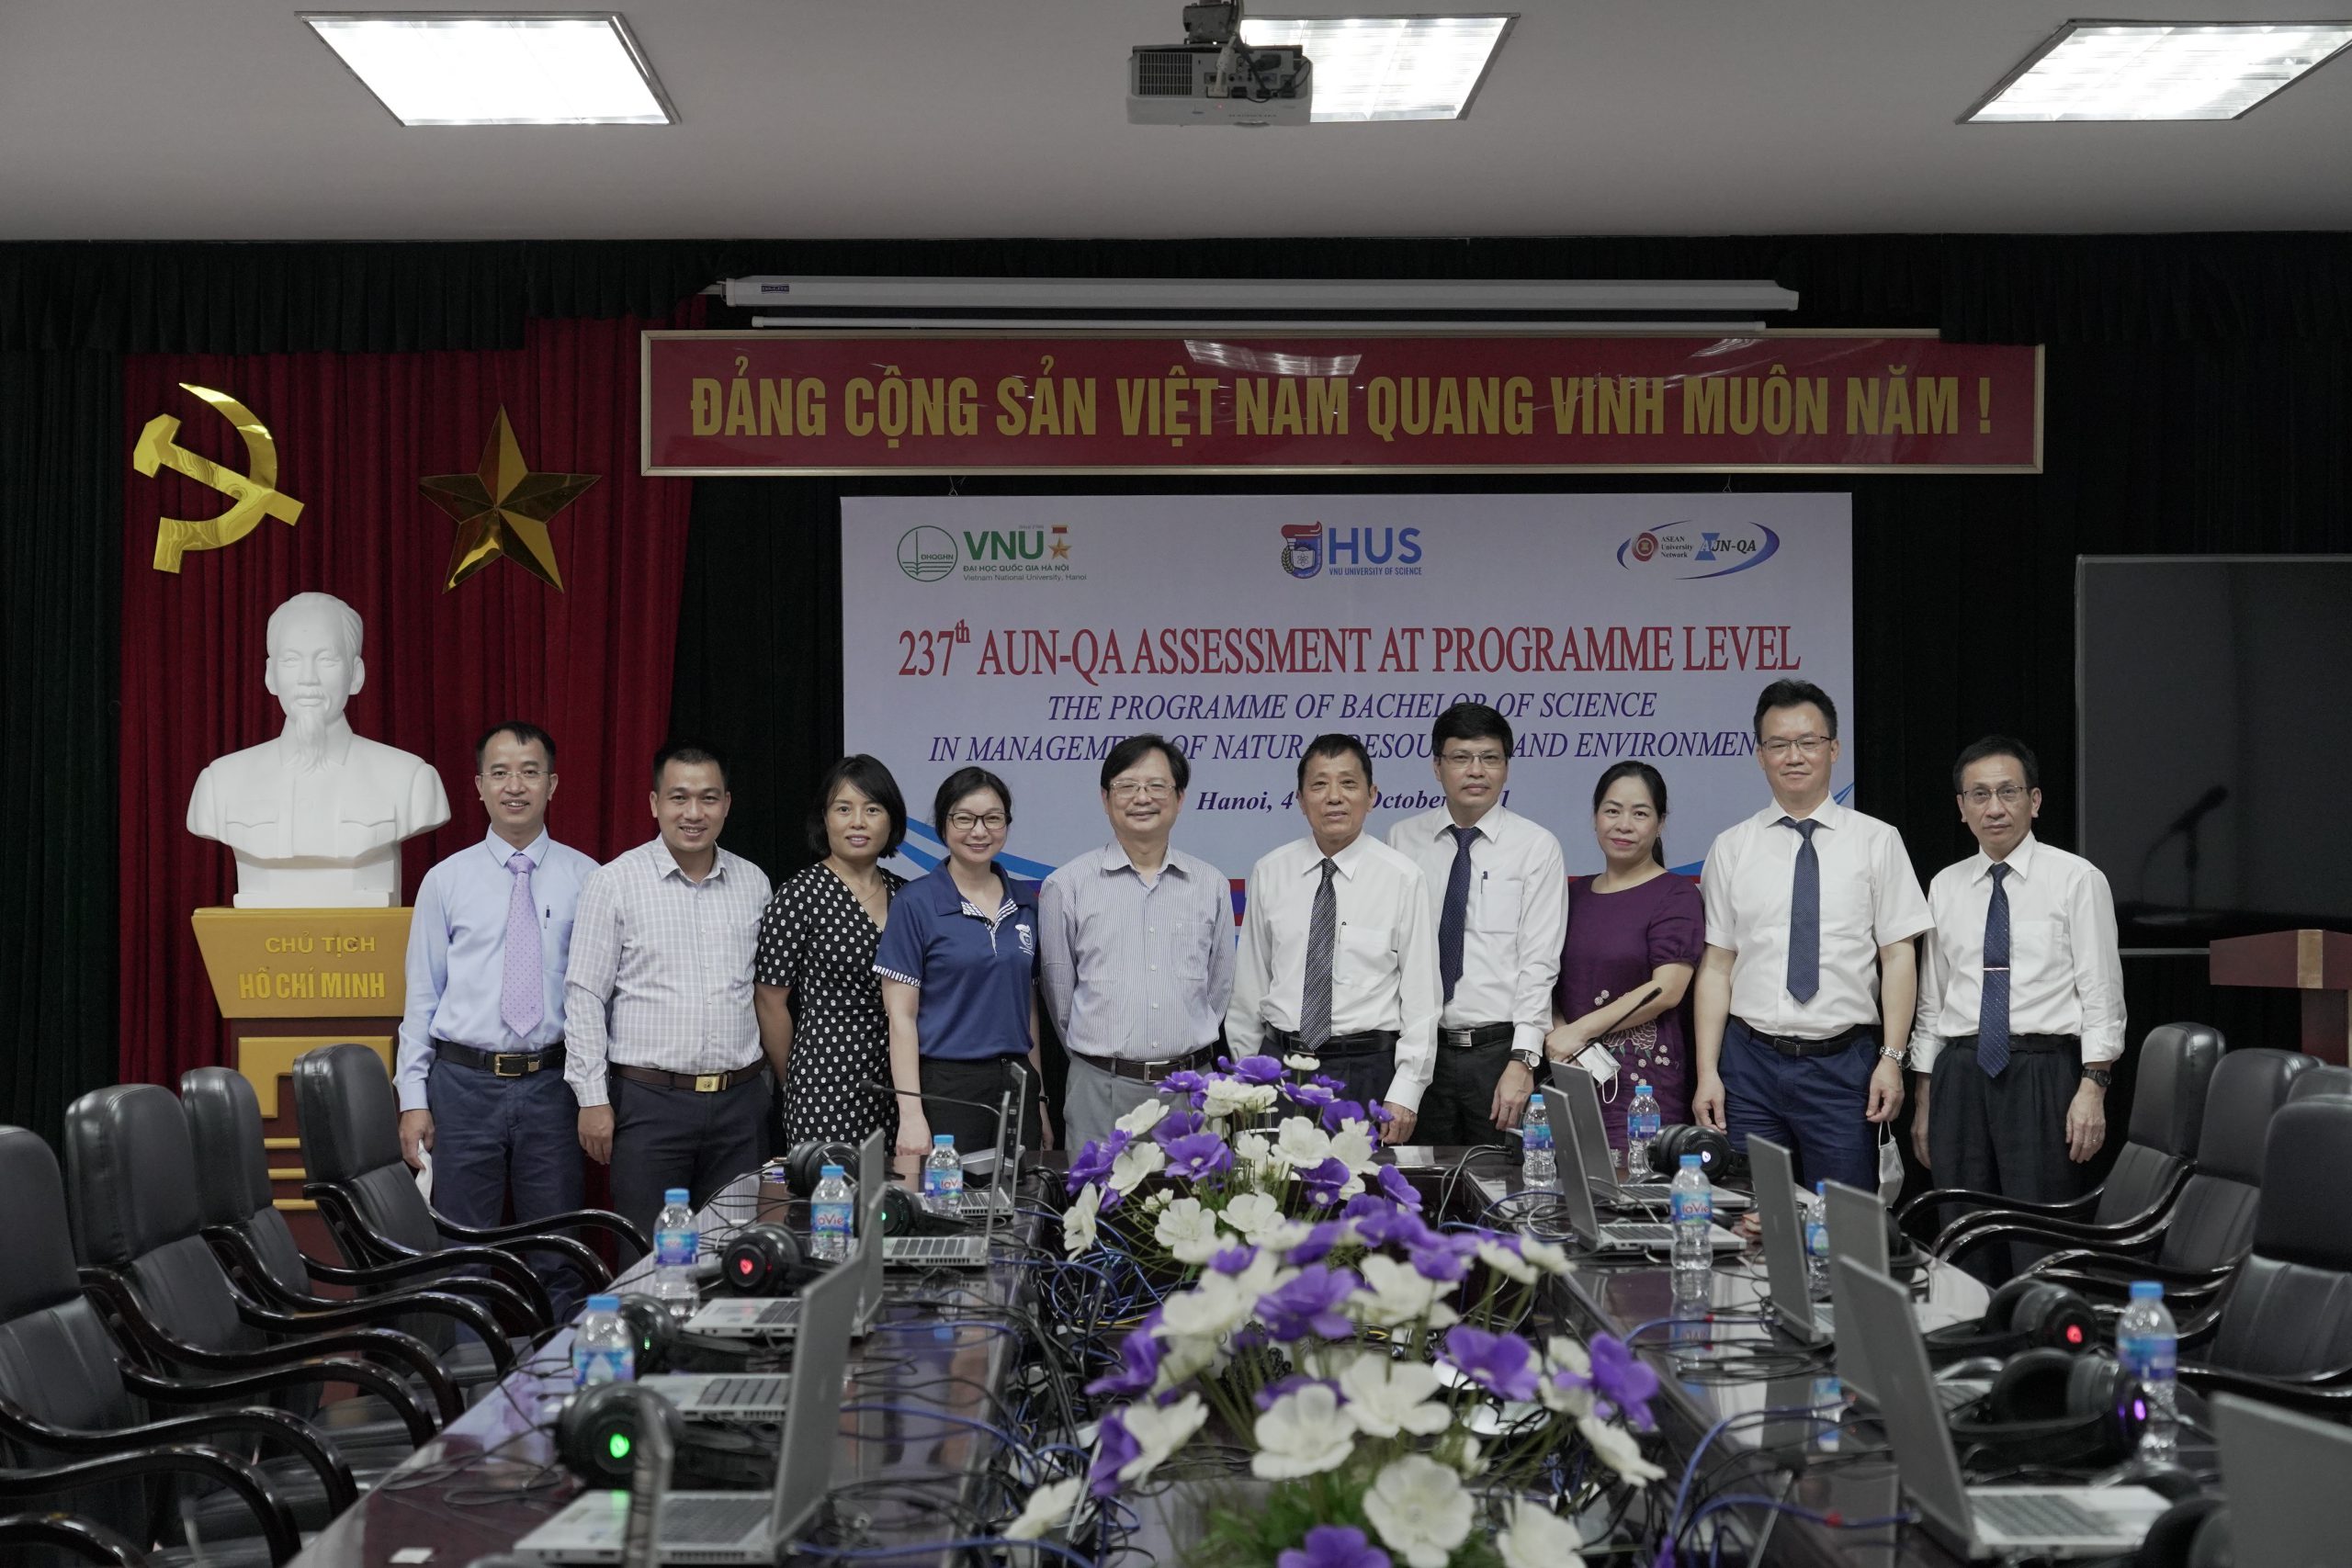 Đại học Quốc gia Hà Nội kết thúc đợt đánh giá ở cấp độ chương trình đào tạo lần thứ 237 theo chuẩn AUN